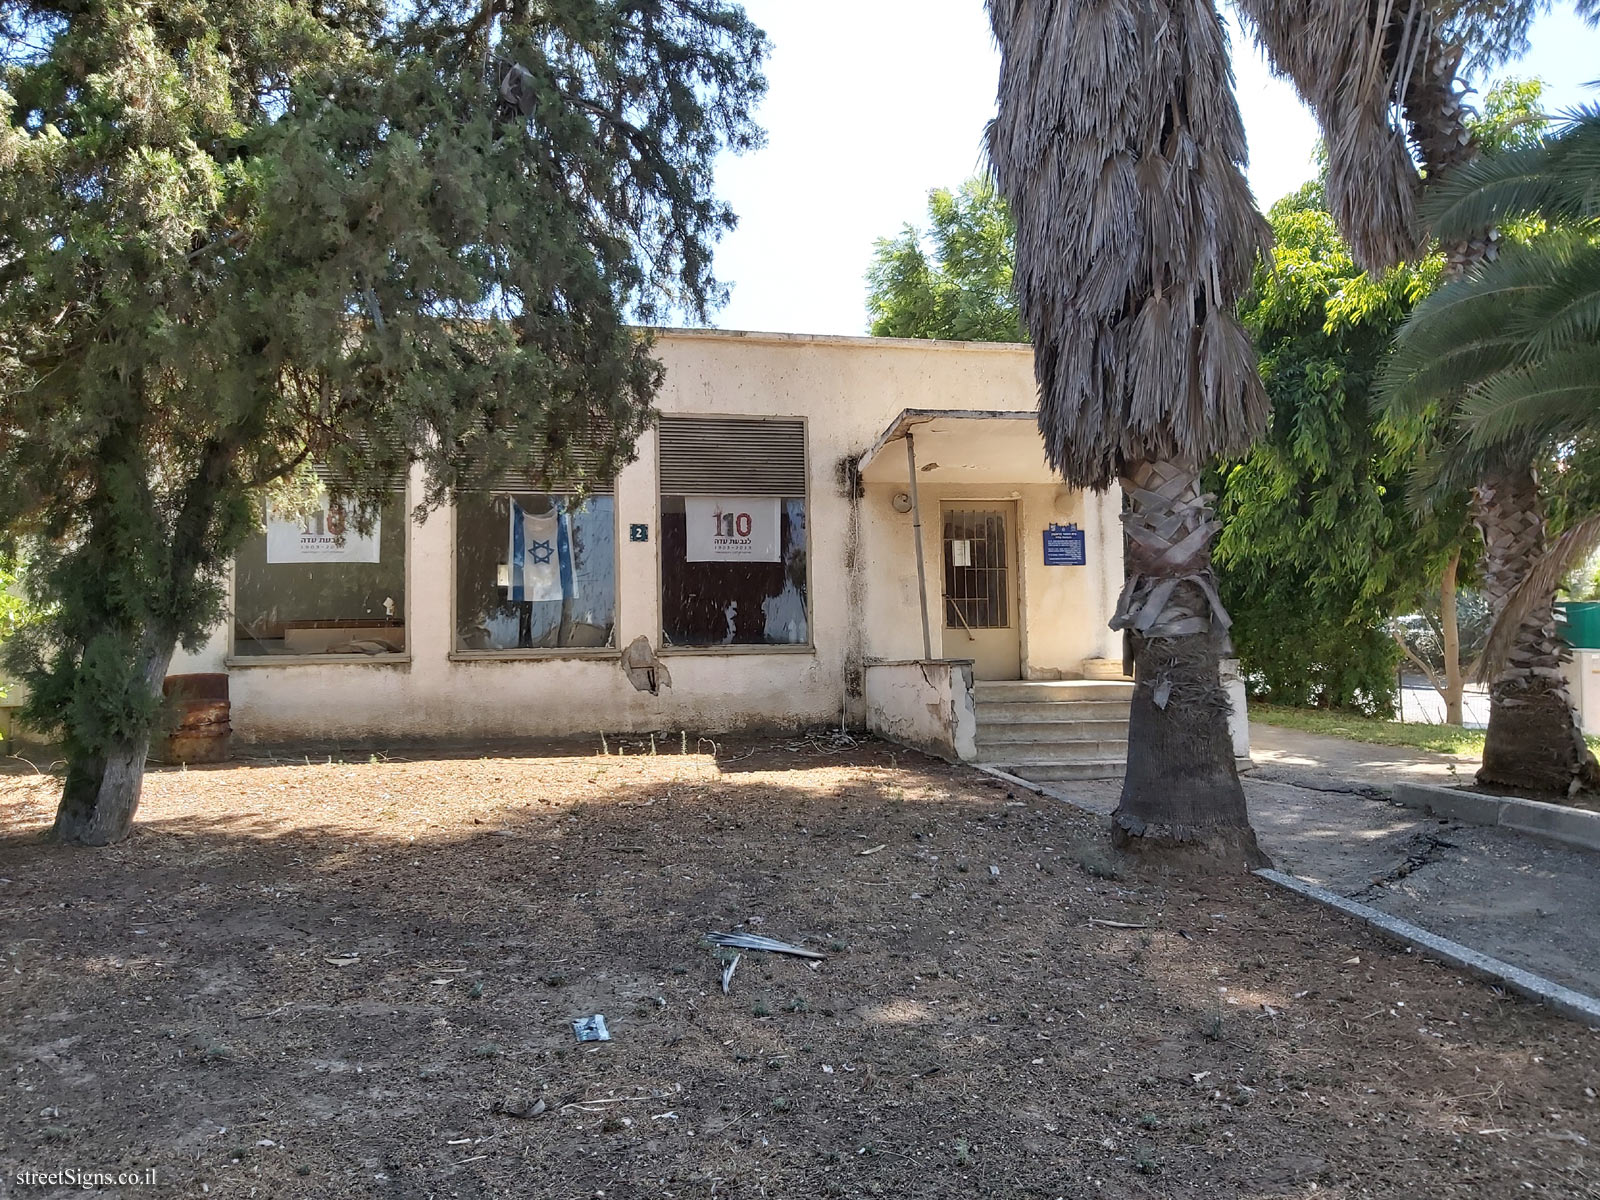 Heritage Sites in Israel - The first school in Givat Ada - HaDekel/HaRishonim, Binyamina-Giv’at Ada, Israel